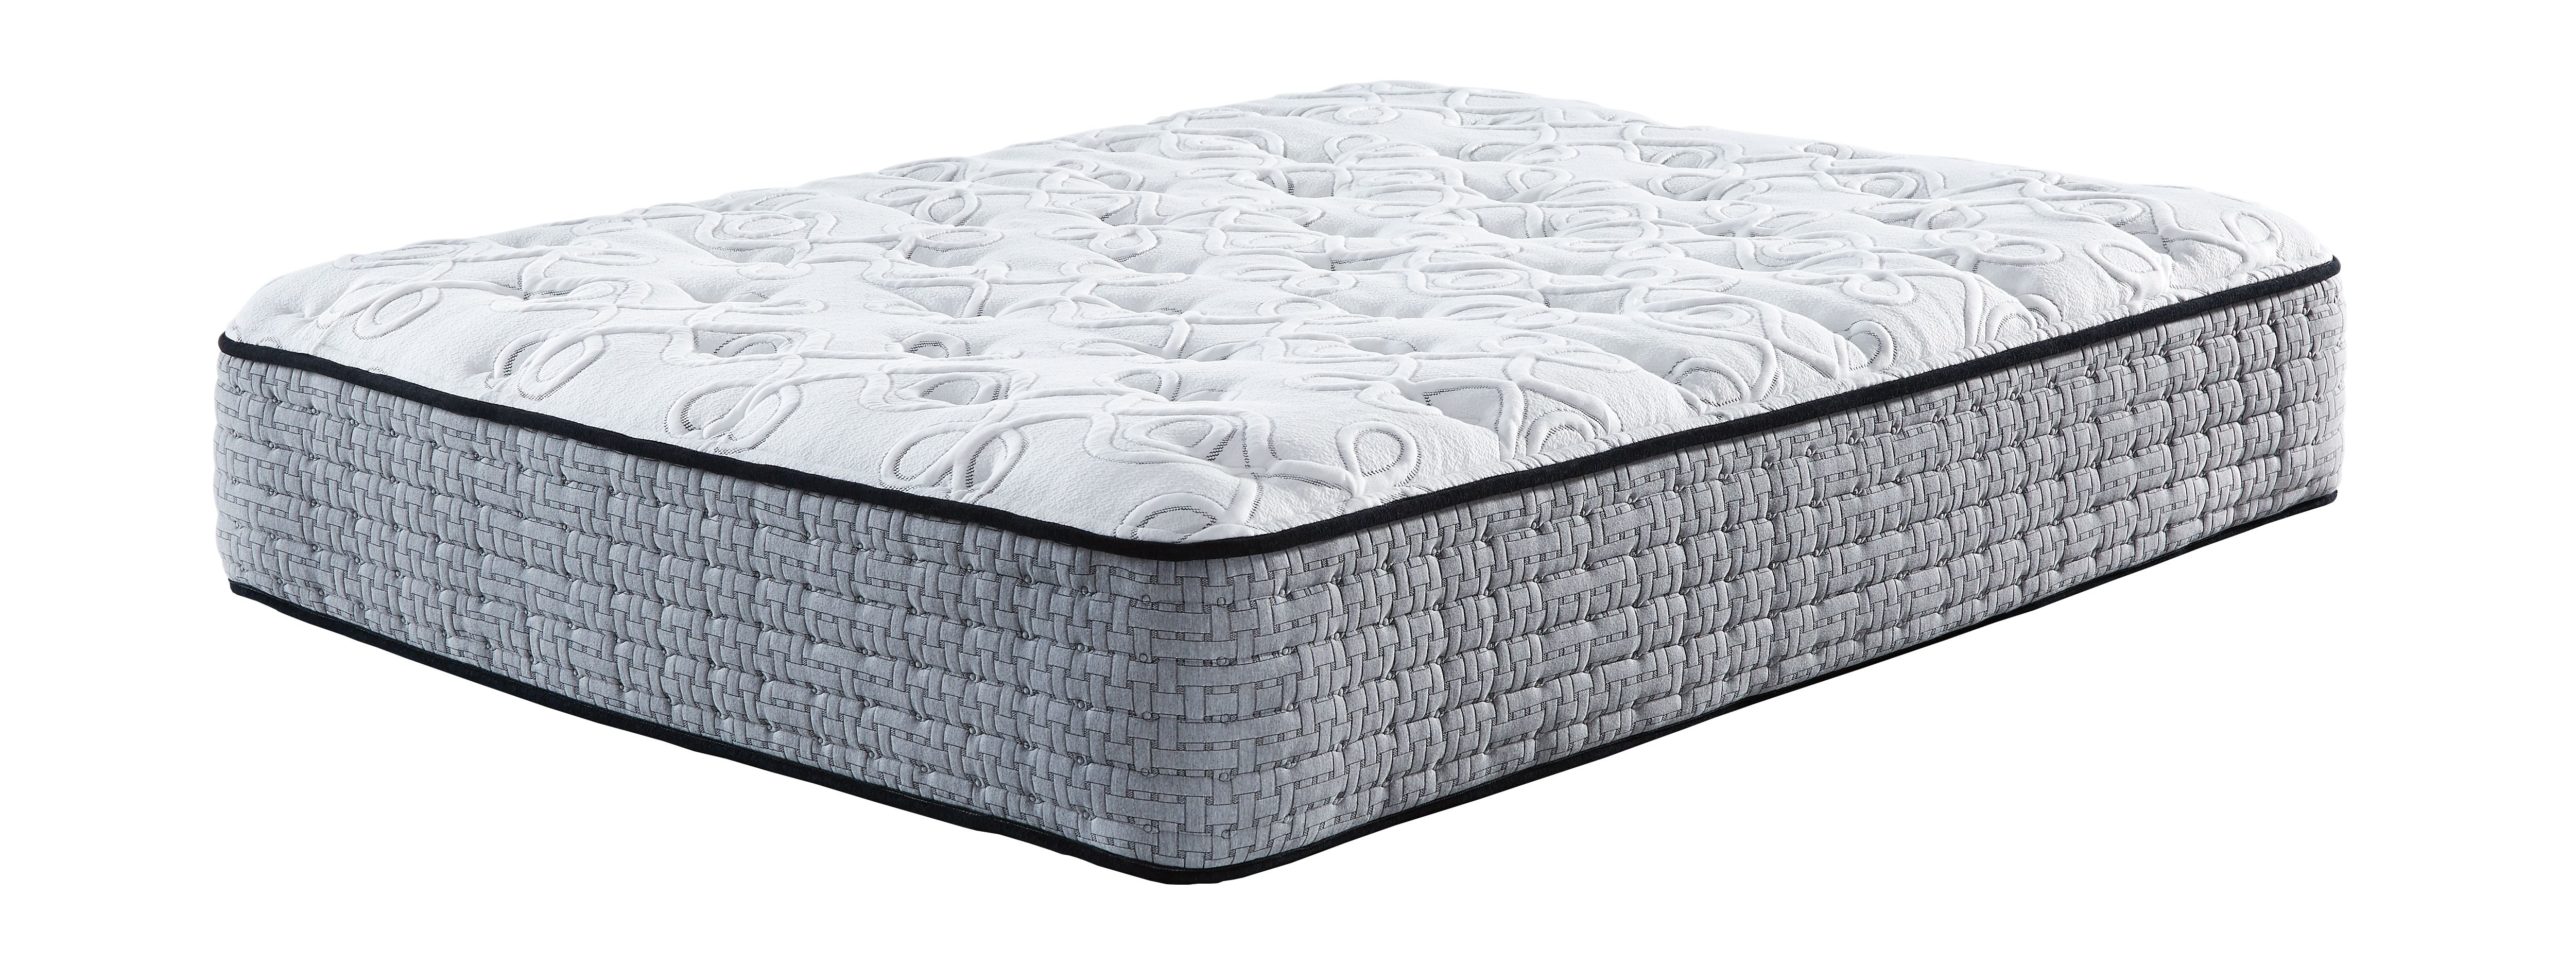 mt rogers ltd pillowtop king mattress